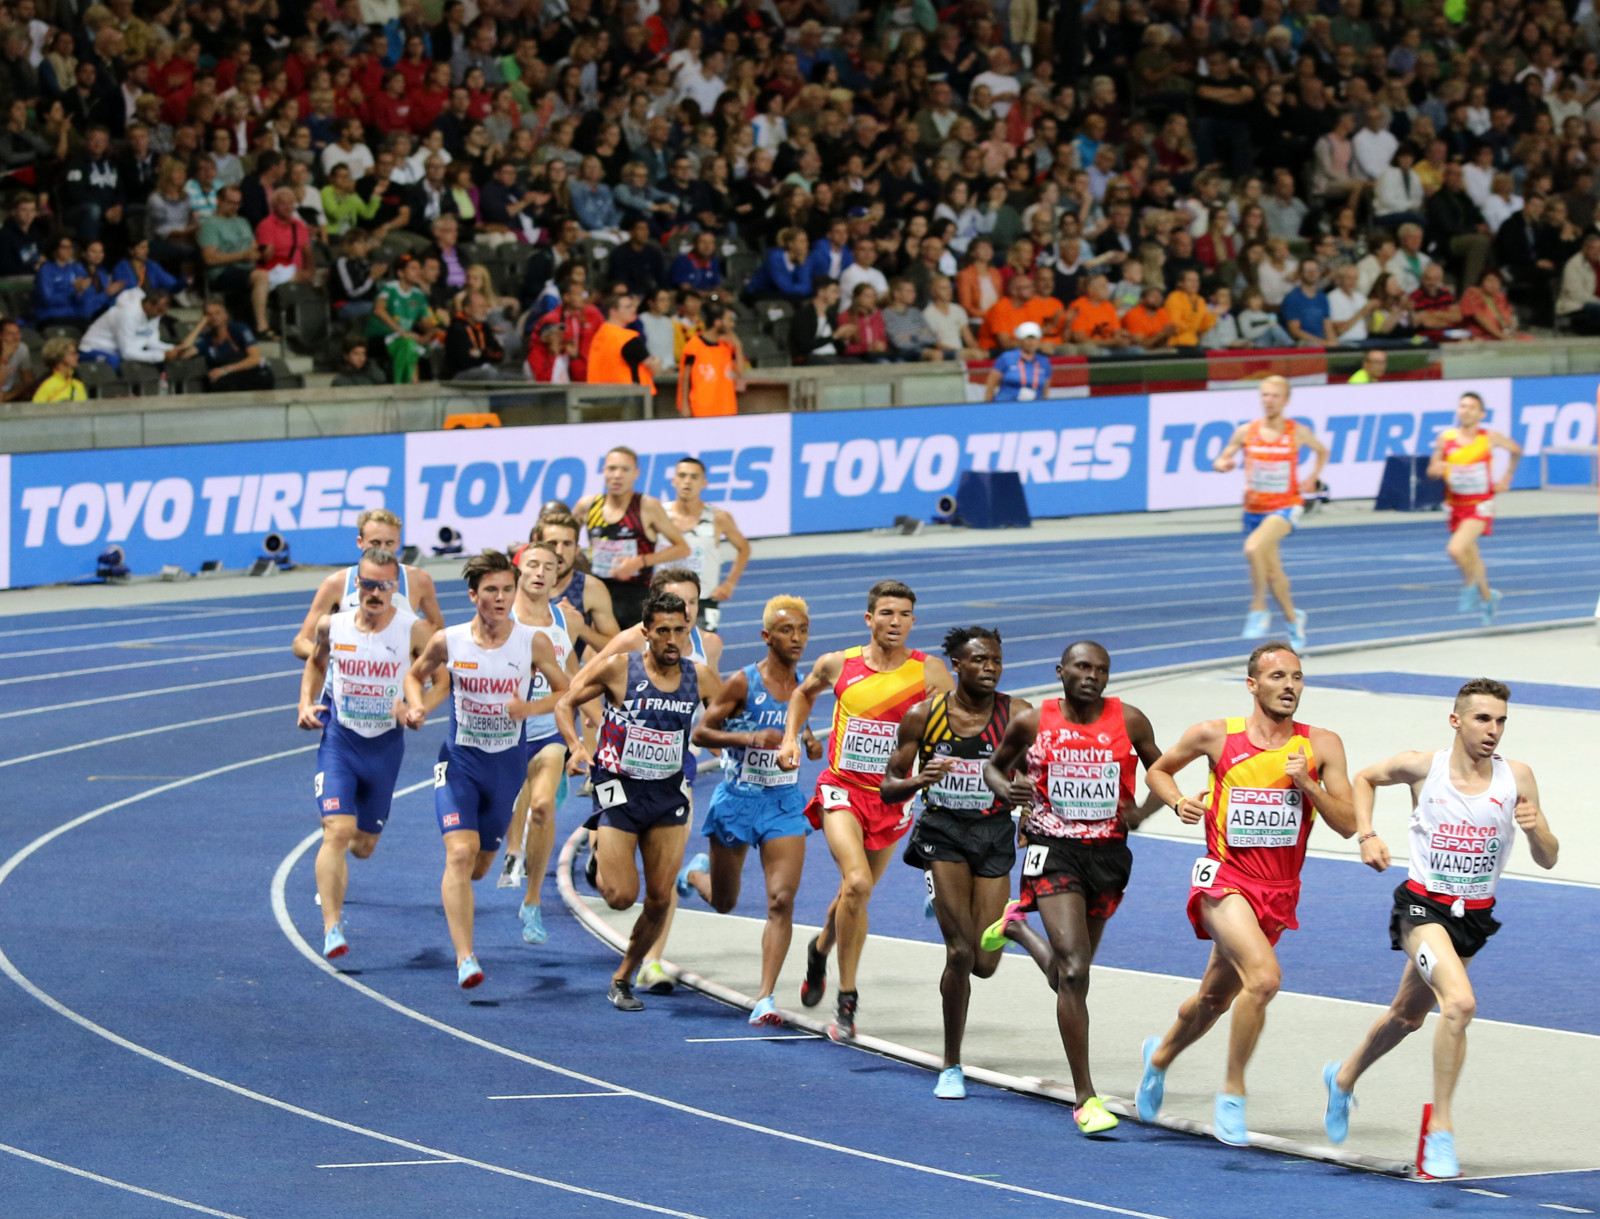 Vom 15. bis 21. August 2022 findet die Leichtathletik-Europameisterschaften statt.